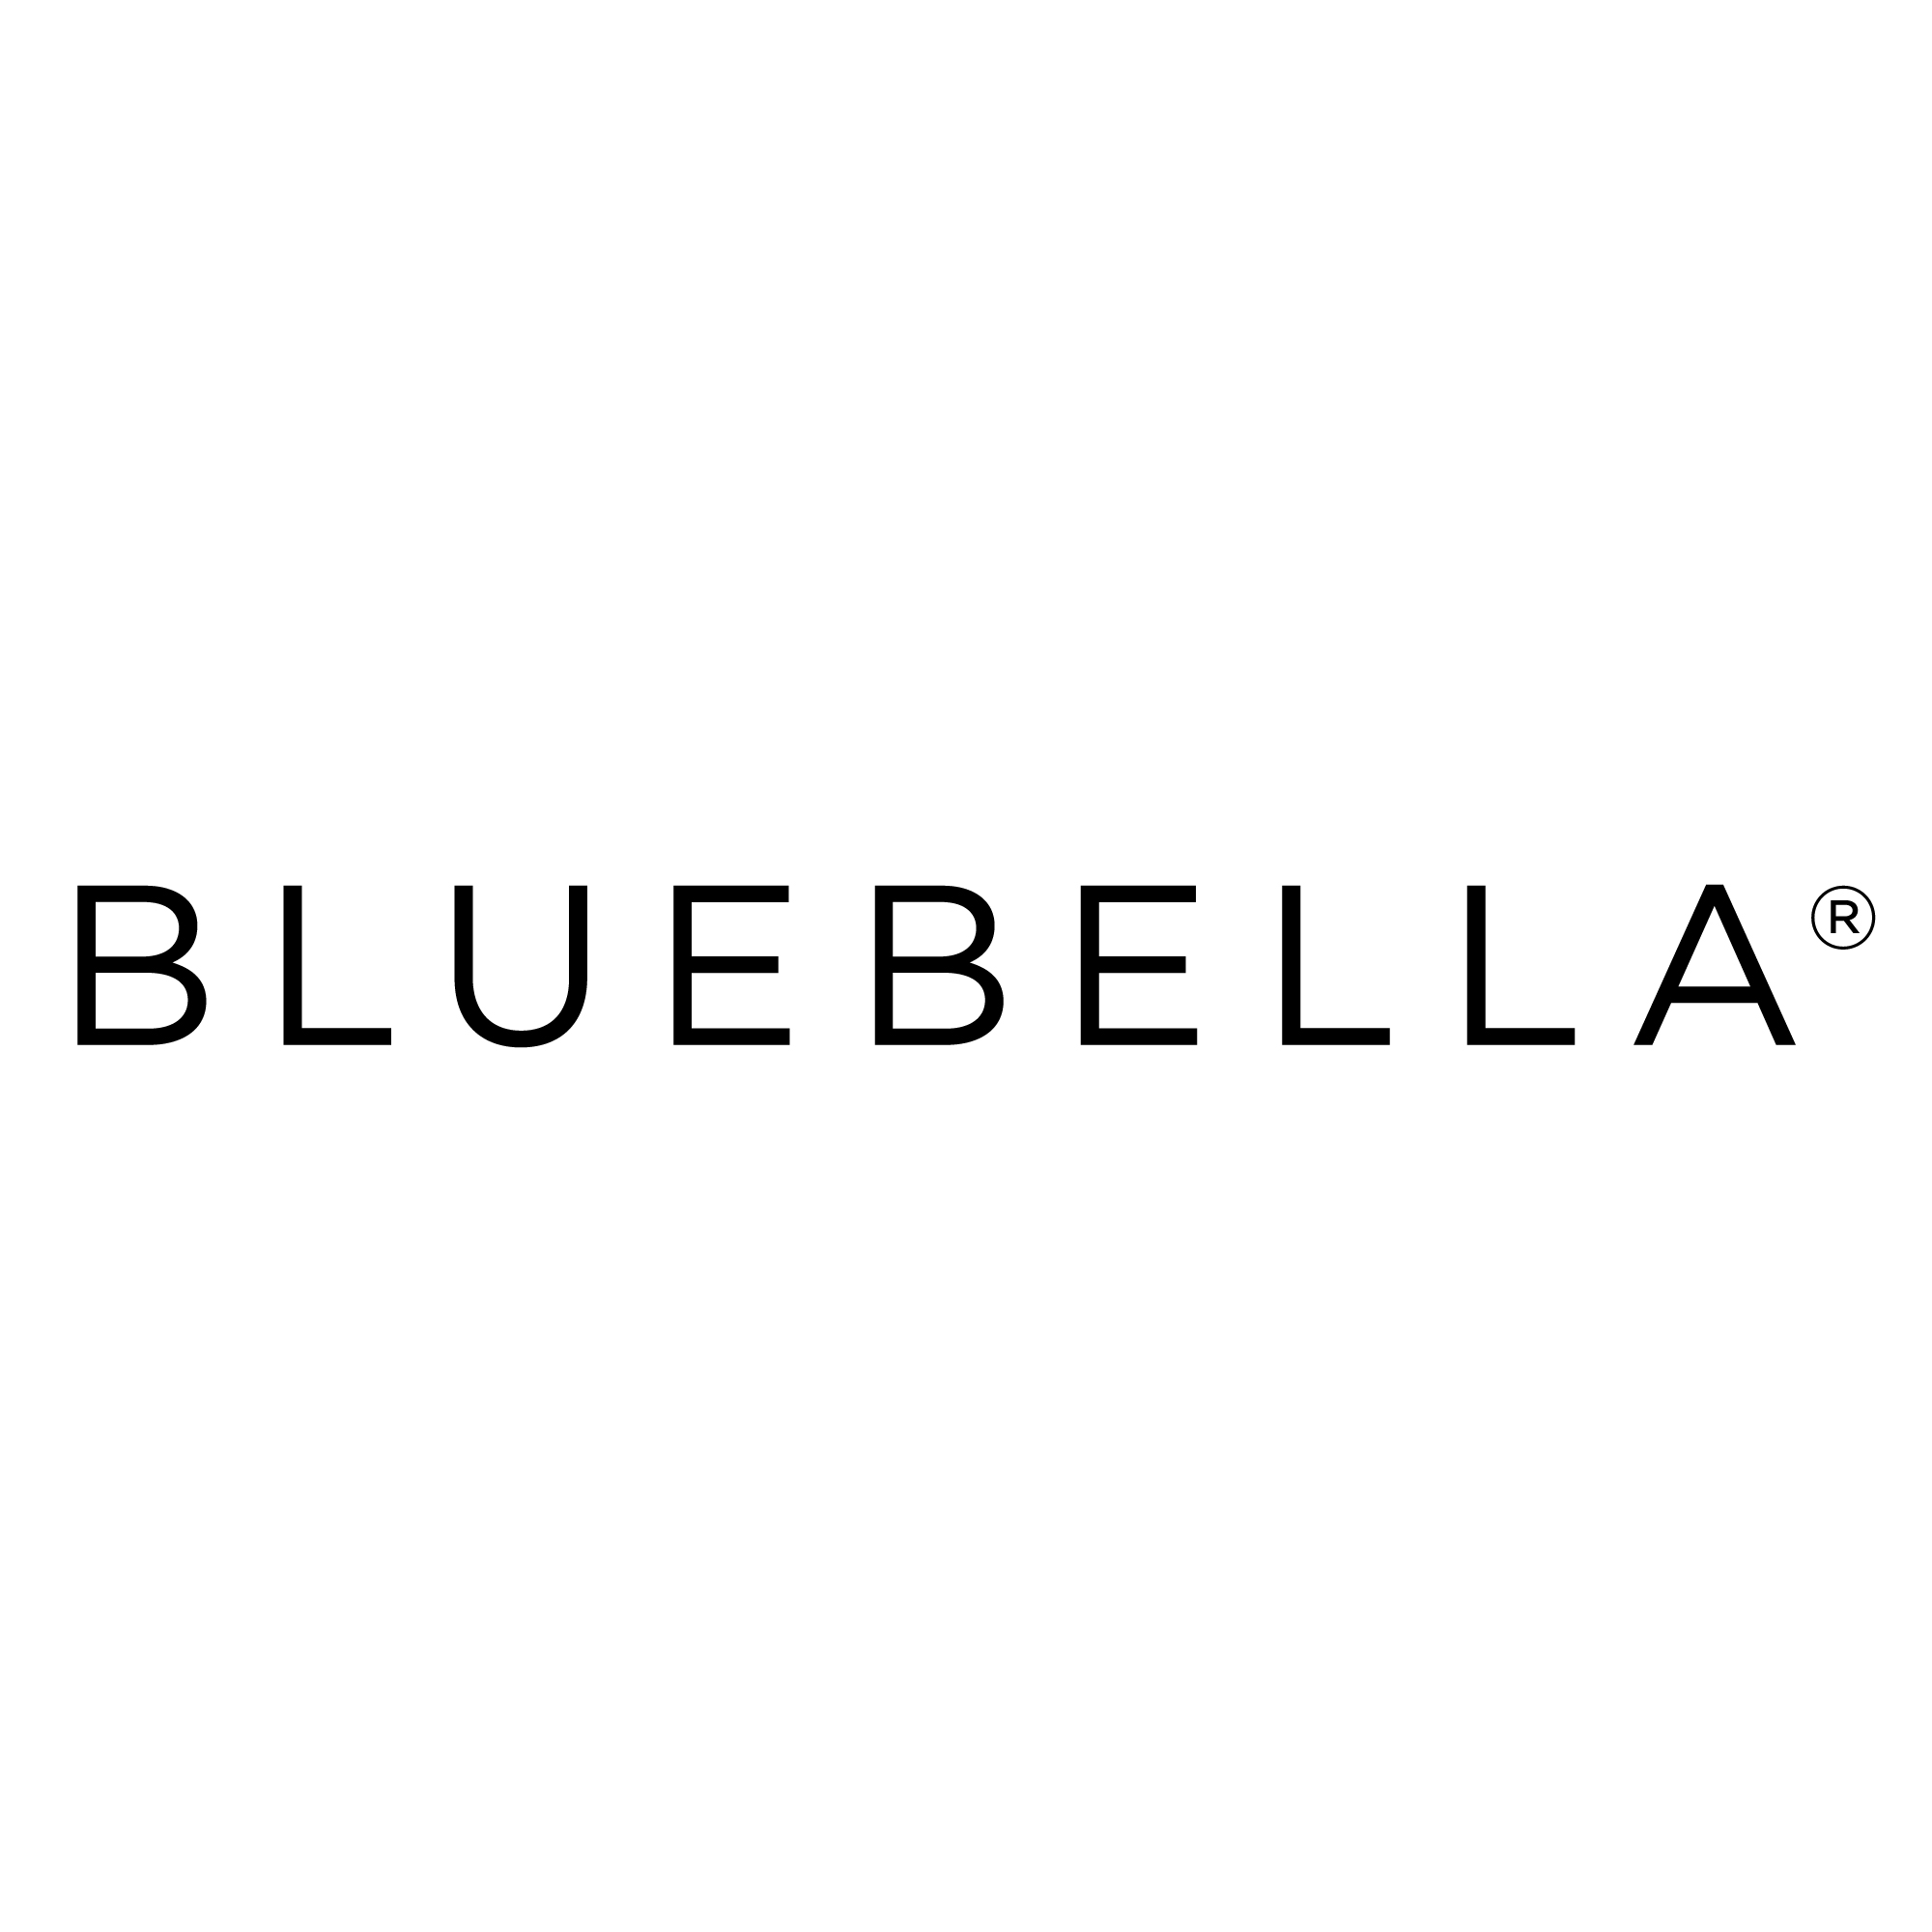 100% WORKING Bluebella Discount Code Australia ([month] [year]) 4